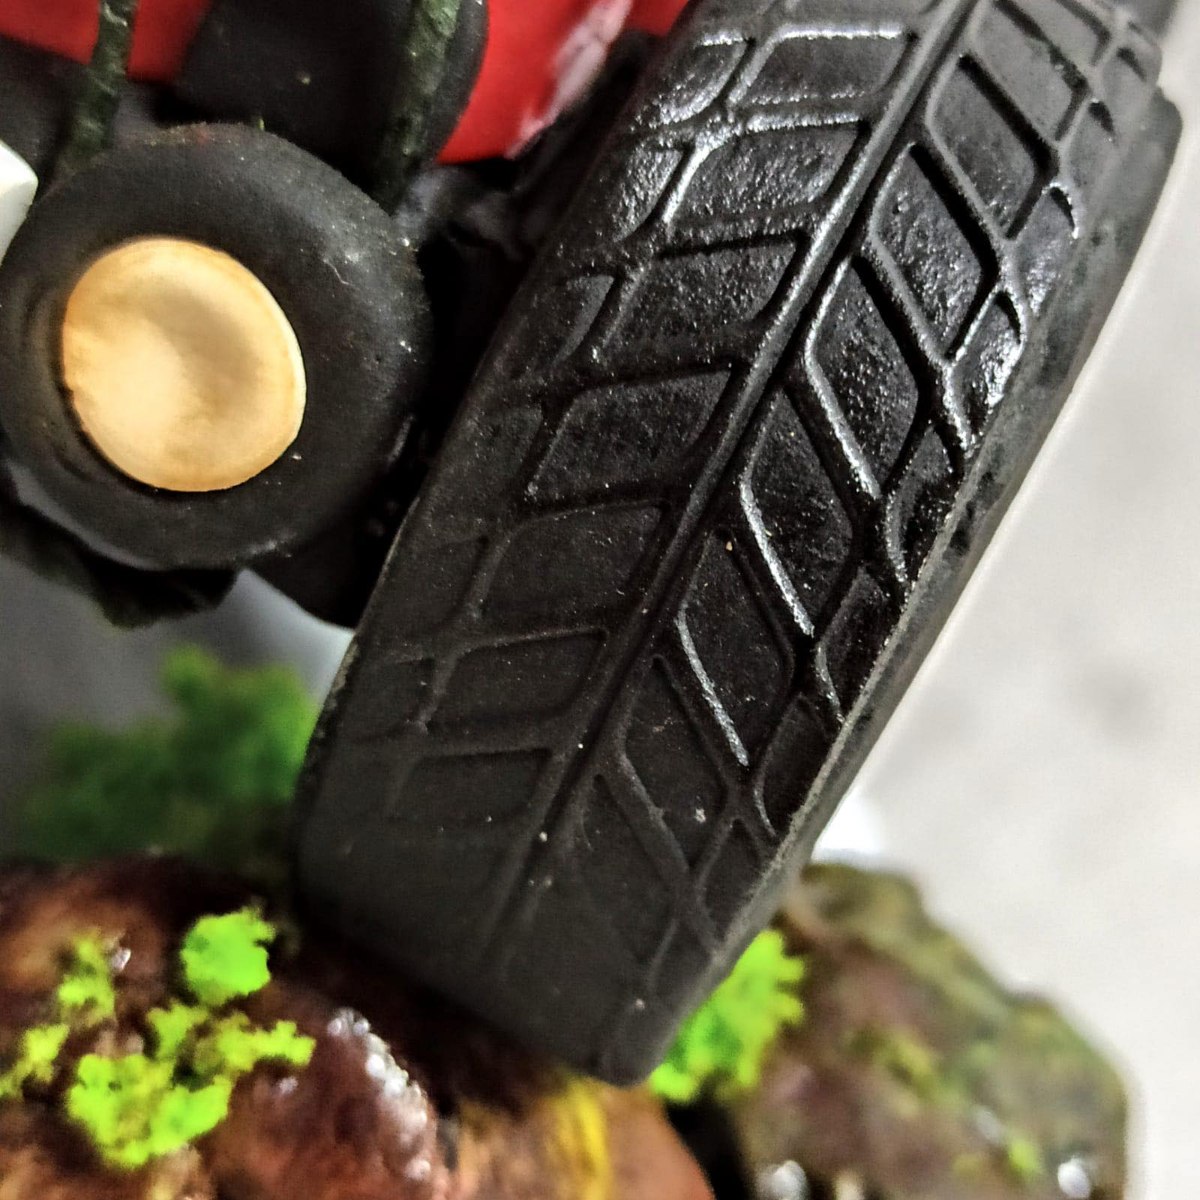 Tyre cake | Birthday cakes for men, Tire cake, Cakes for men